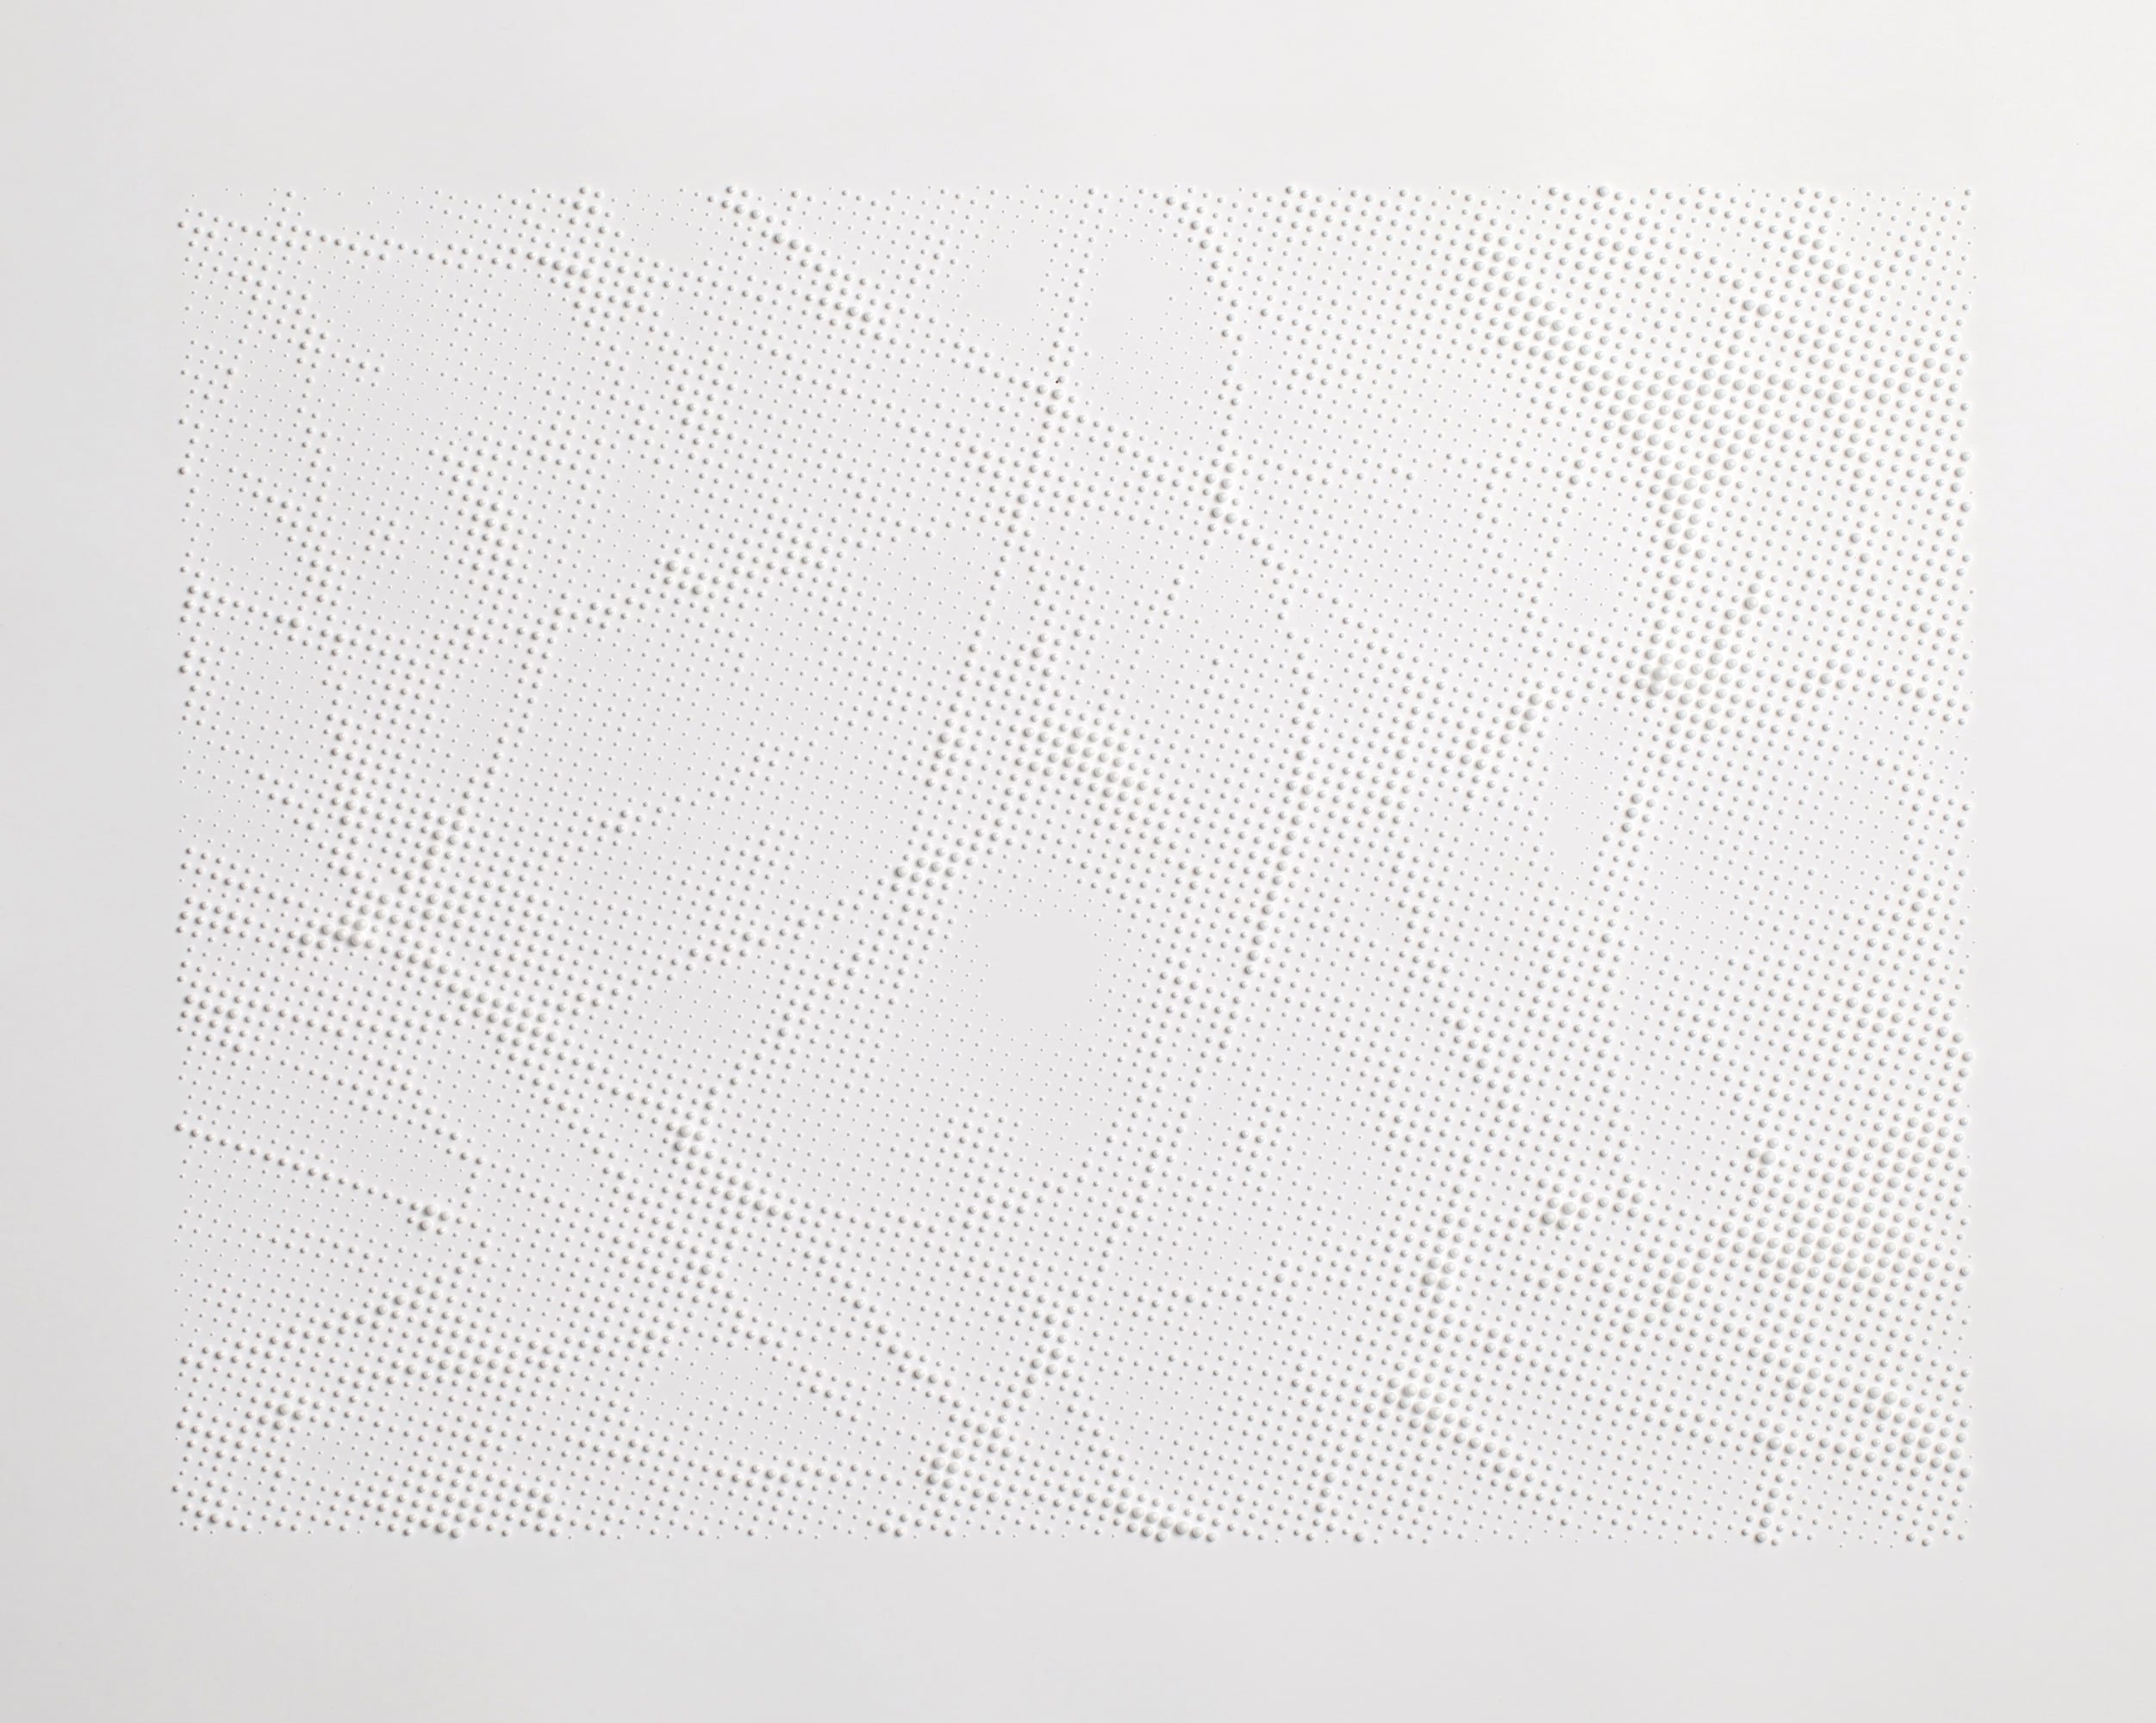 Gabriel de la Mora, 9,478 de la series Unicel, 9,478 bolitas de unicel sobre papel, 103.6 x 68.1 x 6 cm framed, 2012.